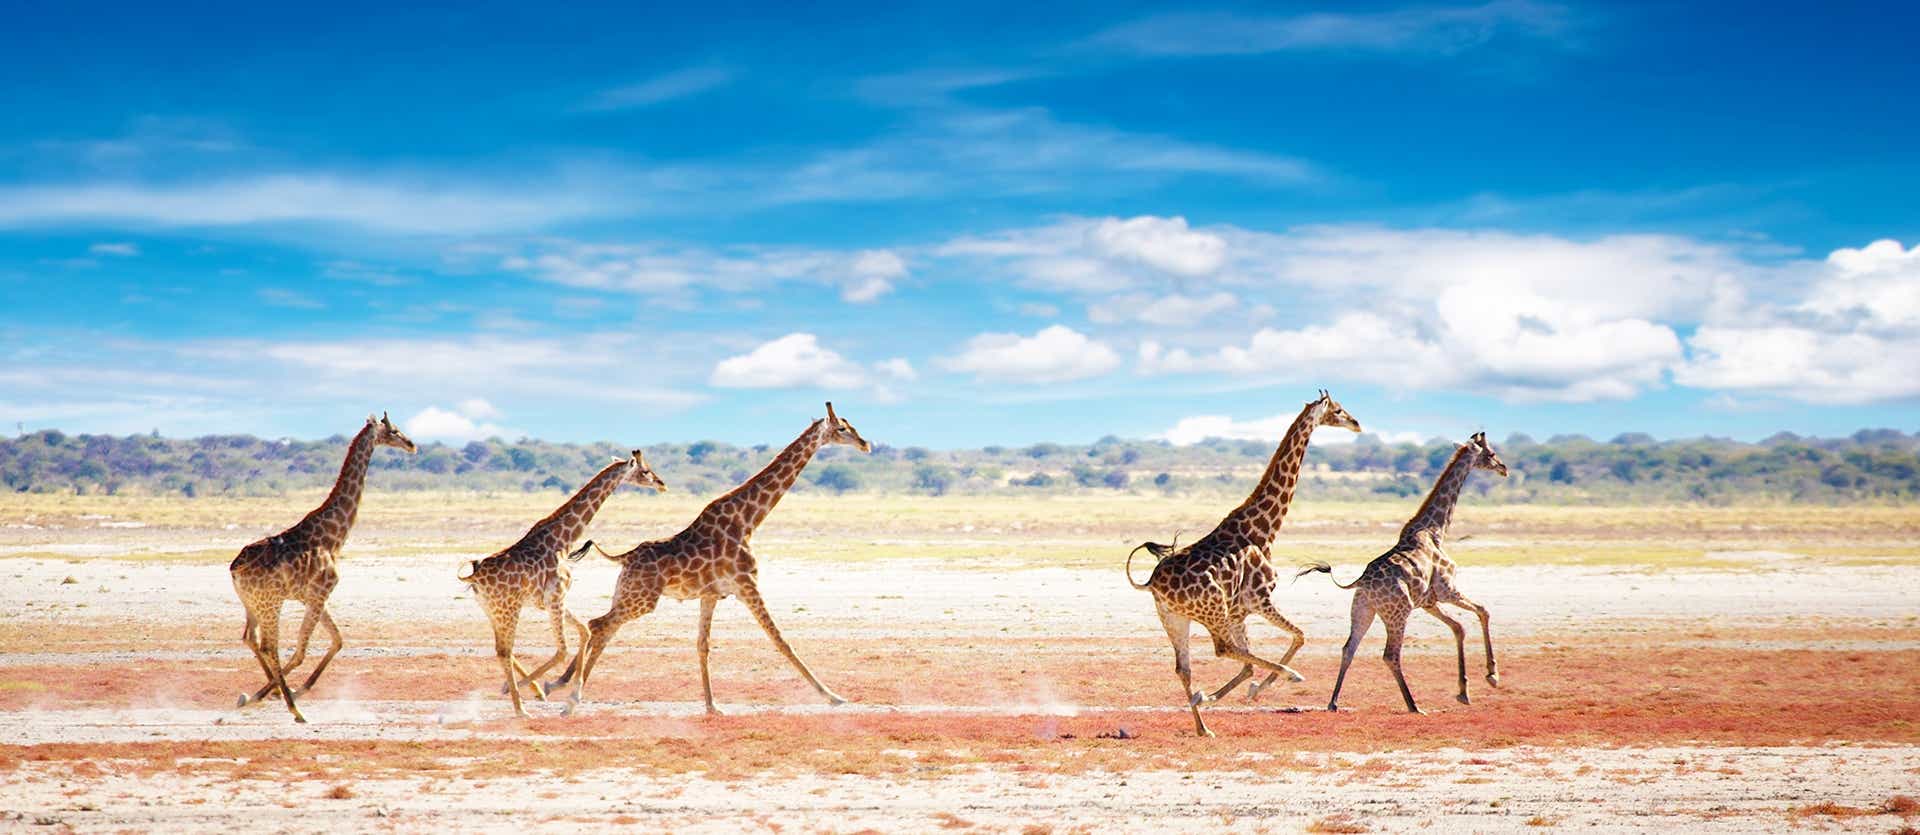 Giraffes <span class="iconos separador"></span> Etosha National Park <span class="iconos separador"></span> Namibia